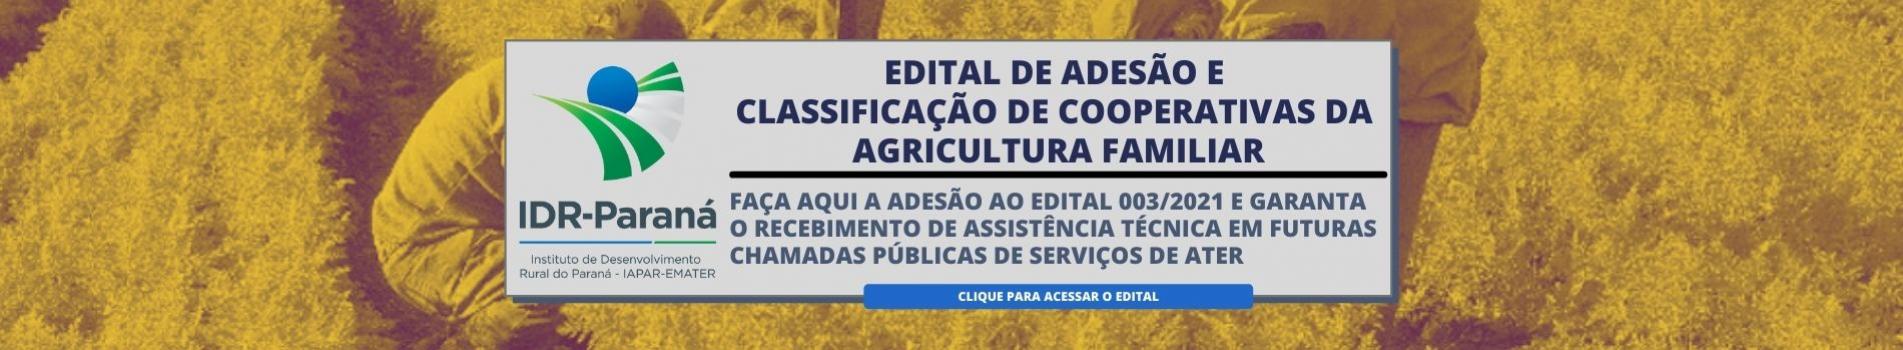 Edital de Adesão e Classificação de Cooperativas da Agricultura Familiar